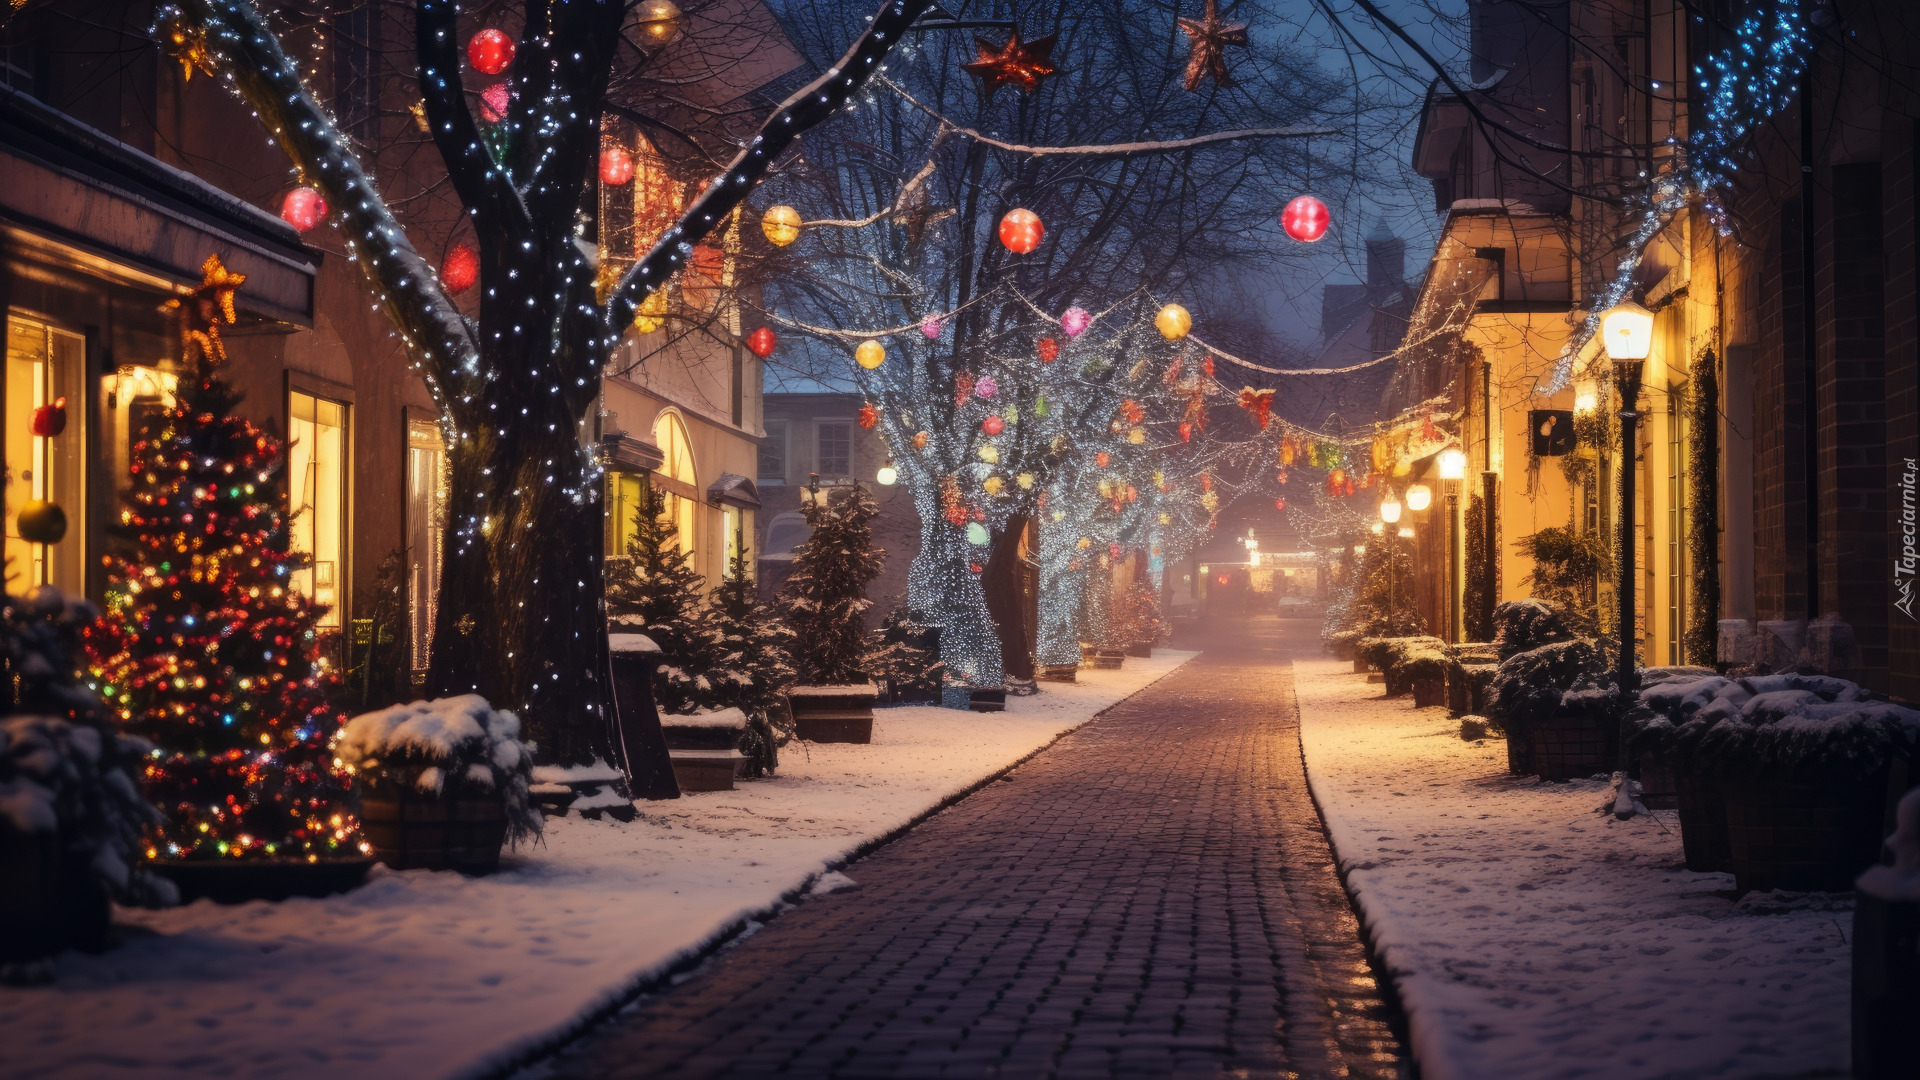 Dekoracja, Zima, Śnieg, Drzewa, Domy, Ulica, Choinka, Noc, Światła, Boże Narodzenie